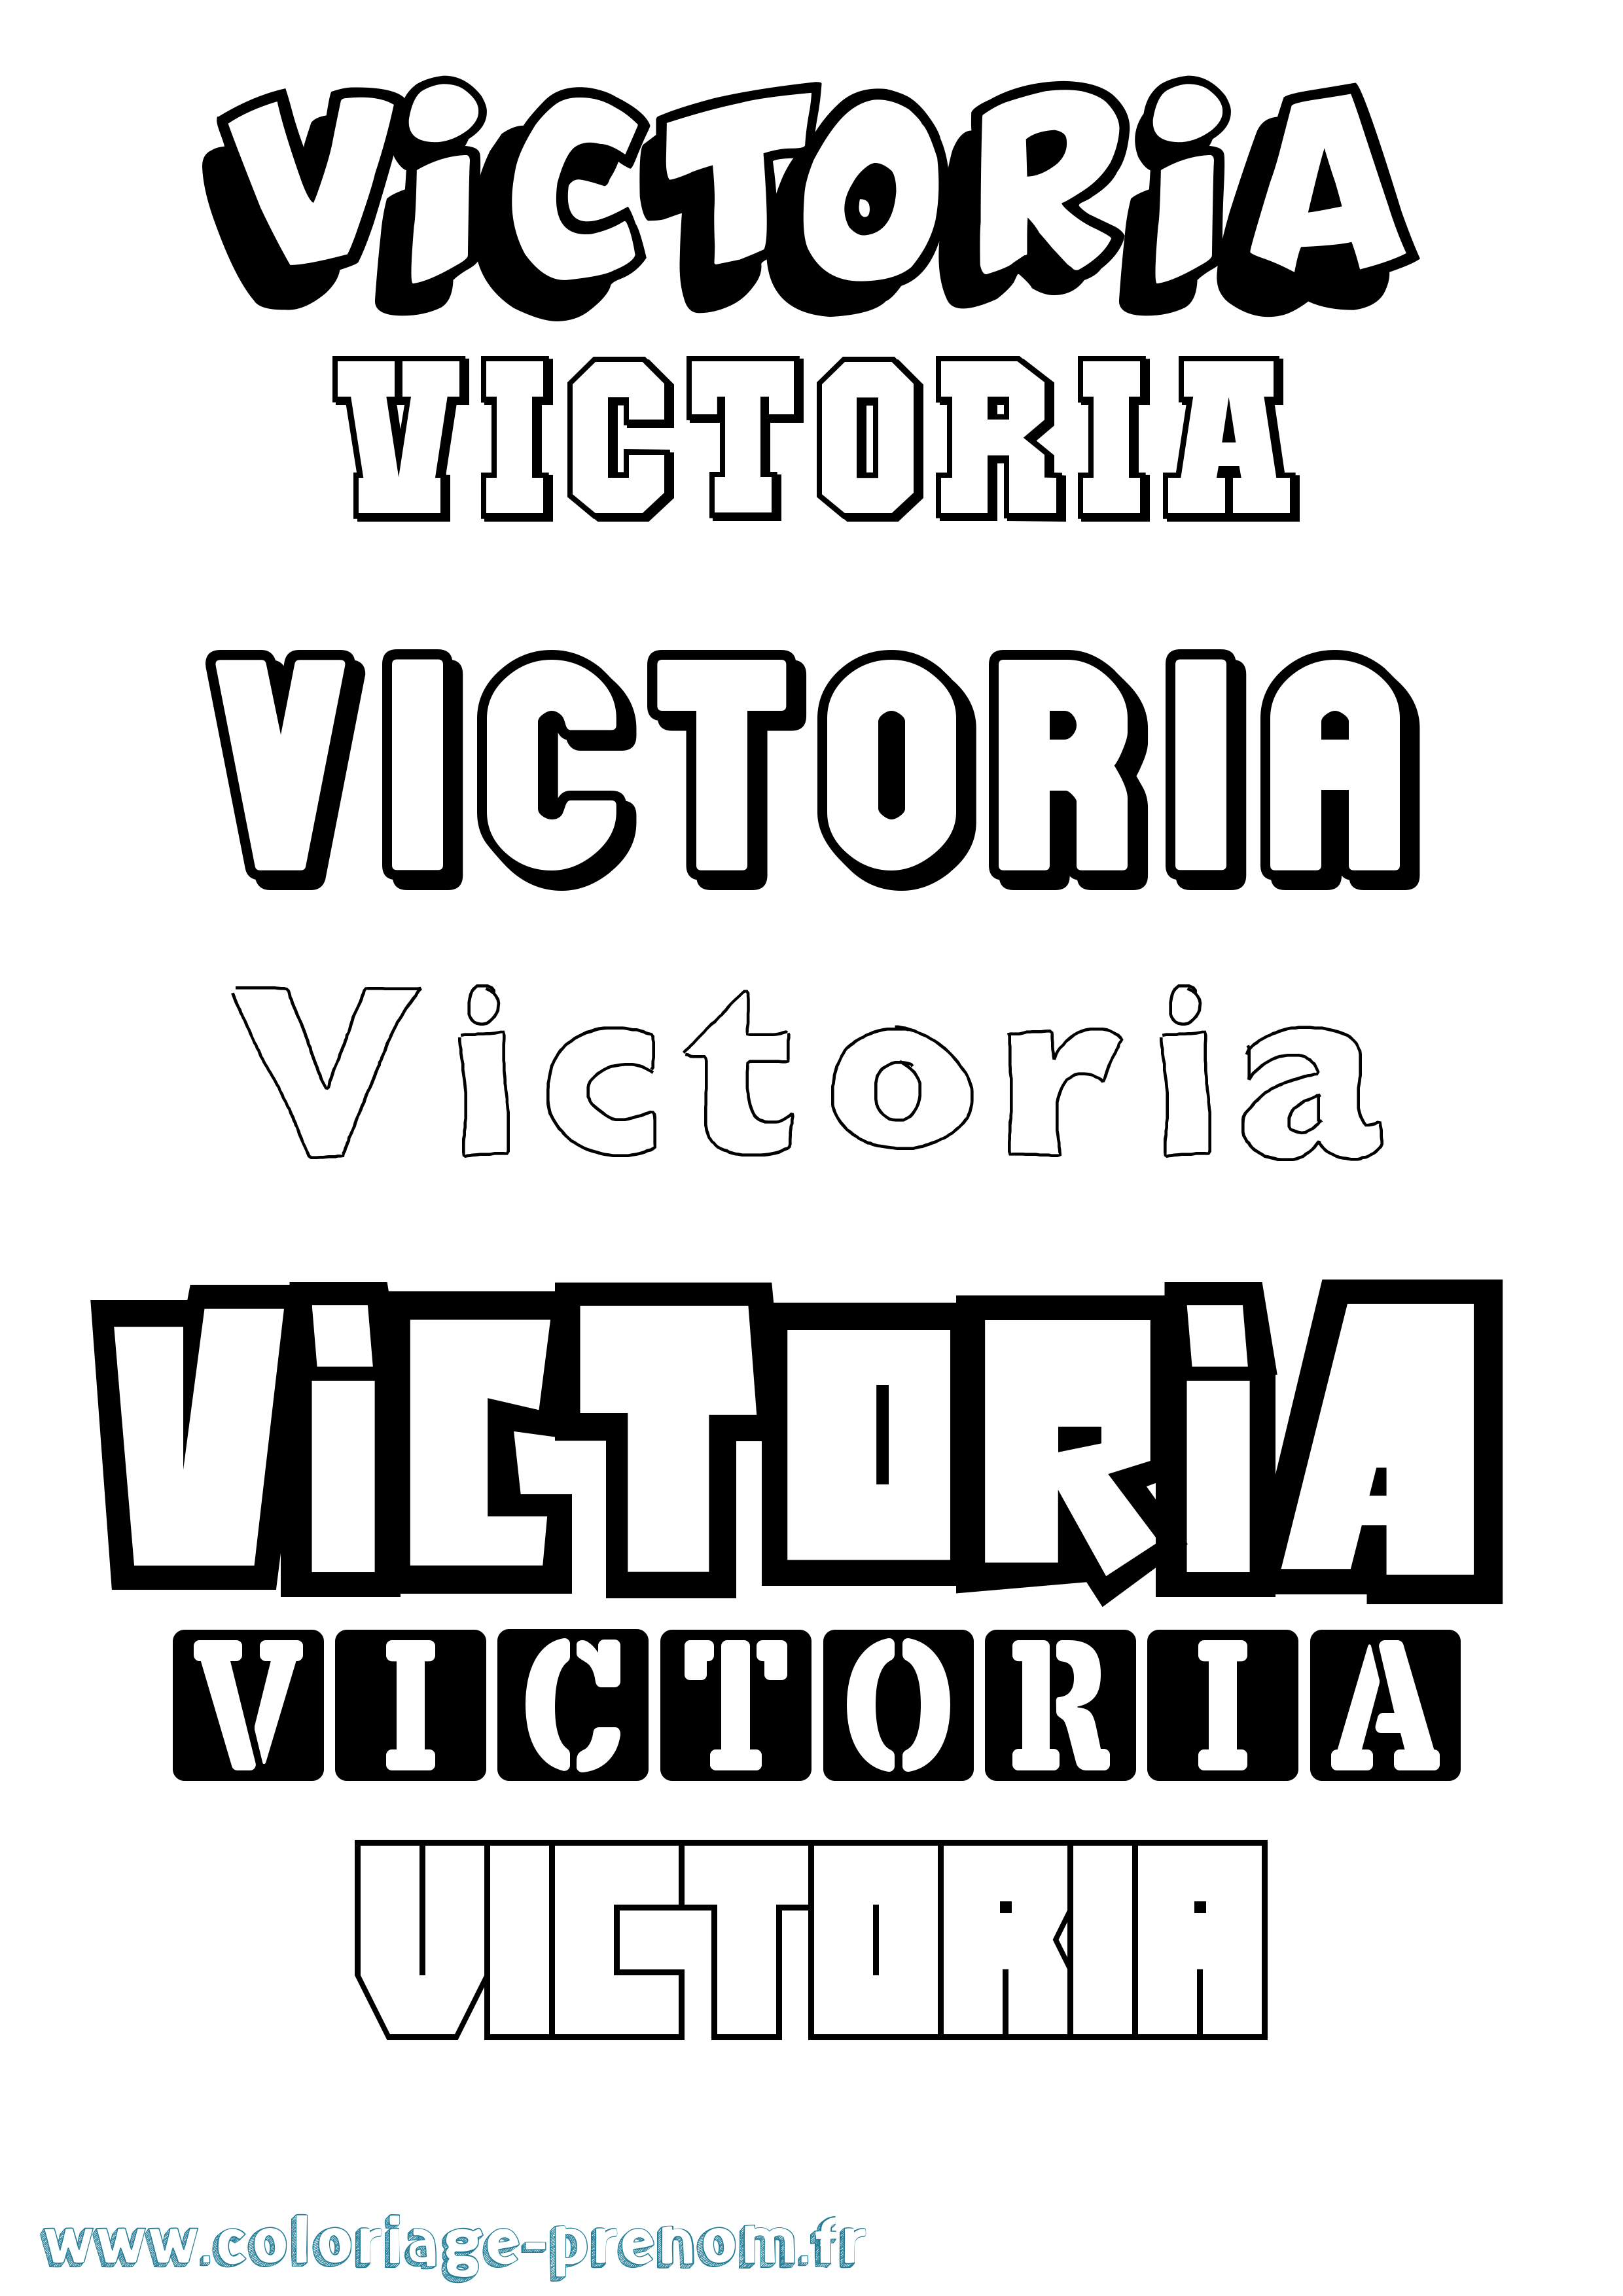 Coloriage du prénom Victoria : à Imprimer ou Télécharger facilement